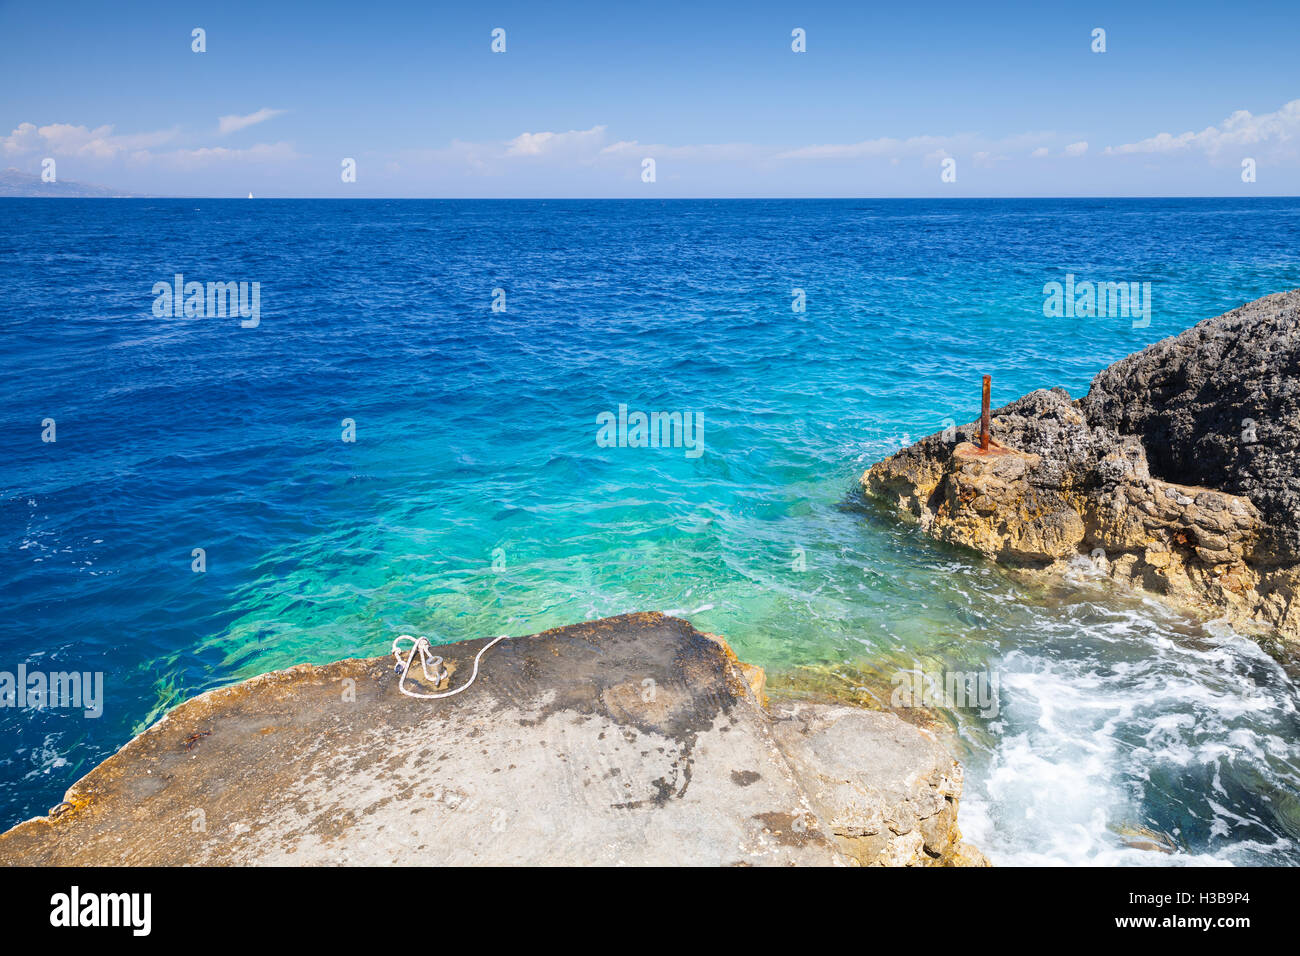 Avec les roches du littoral marin de Zakynthos île grecque dans la mer Ionienne Banque D'Images